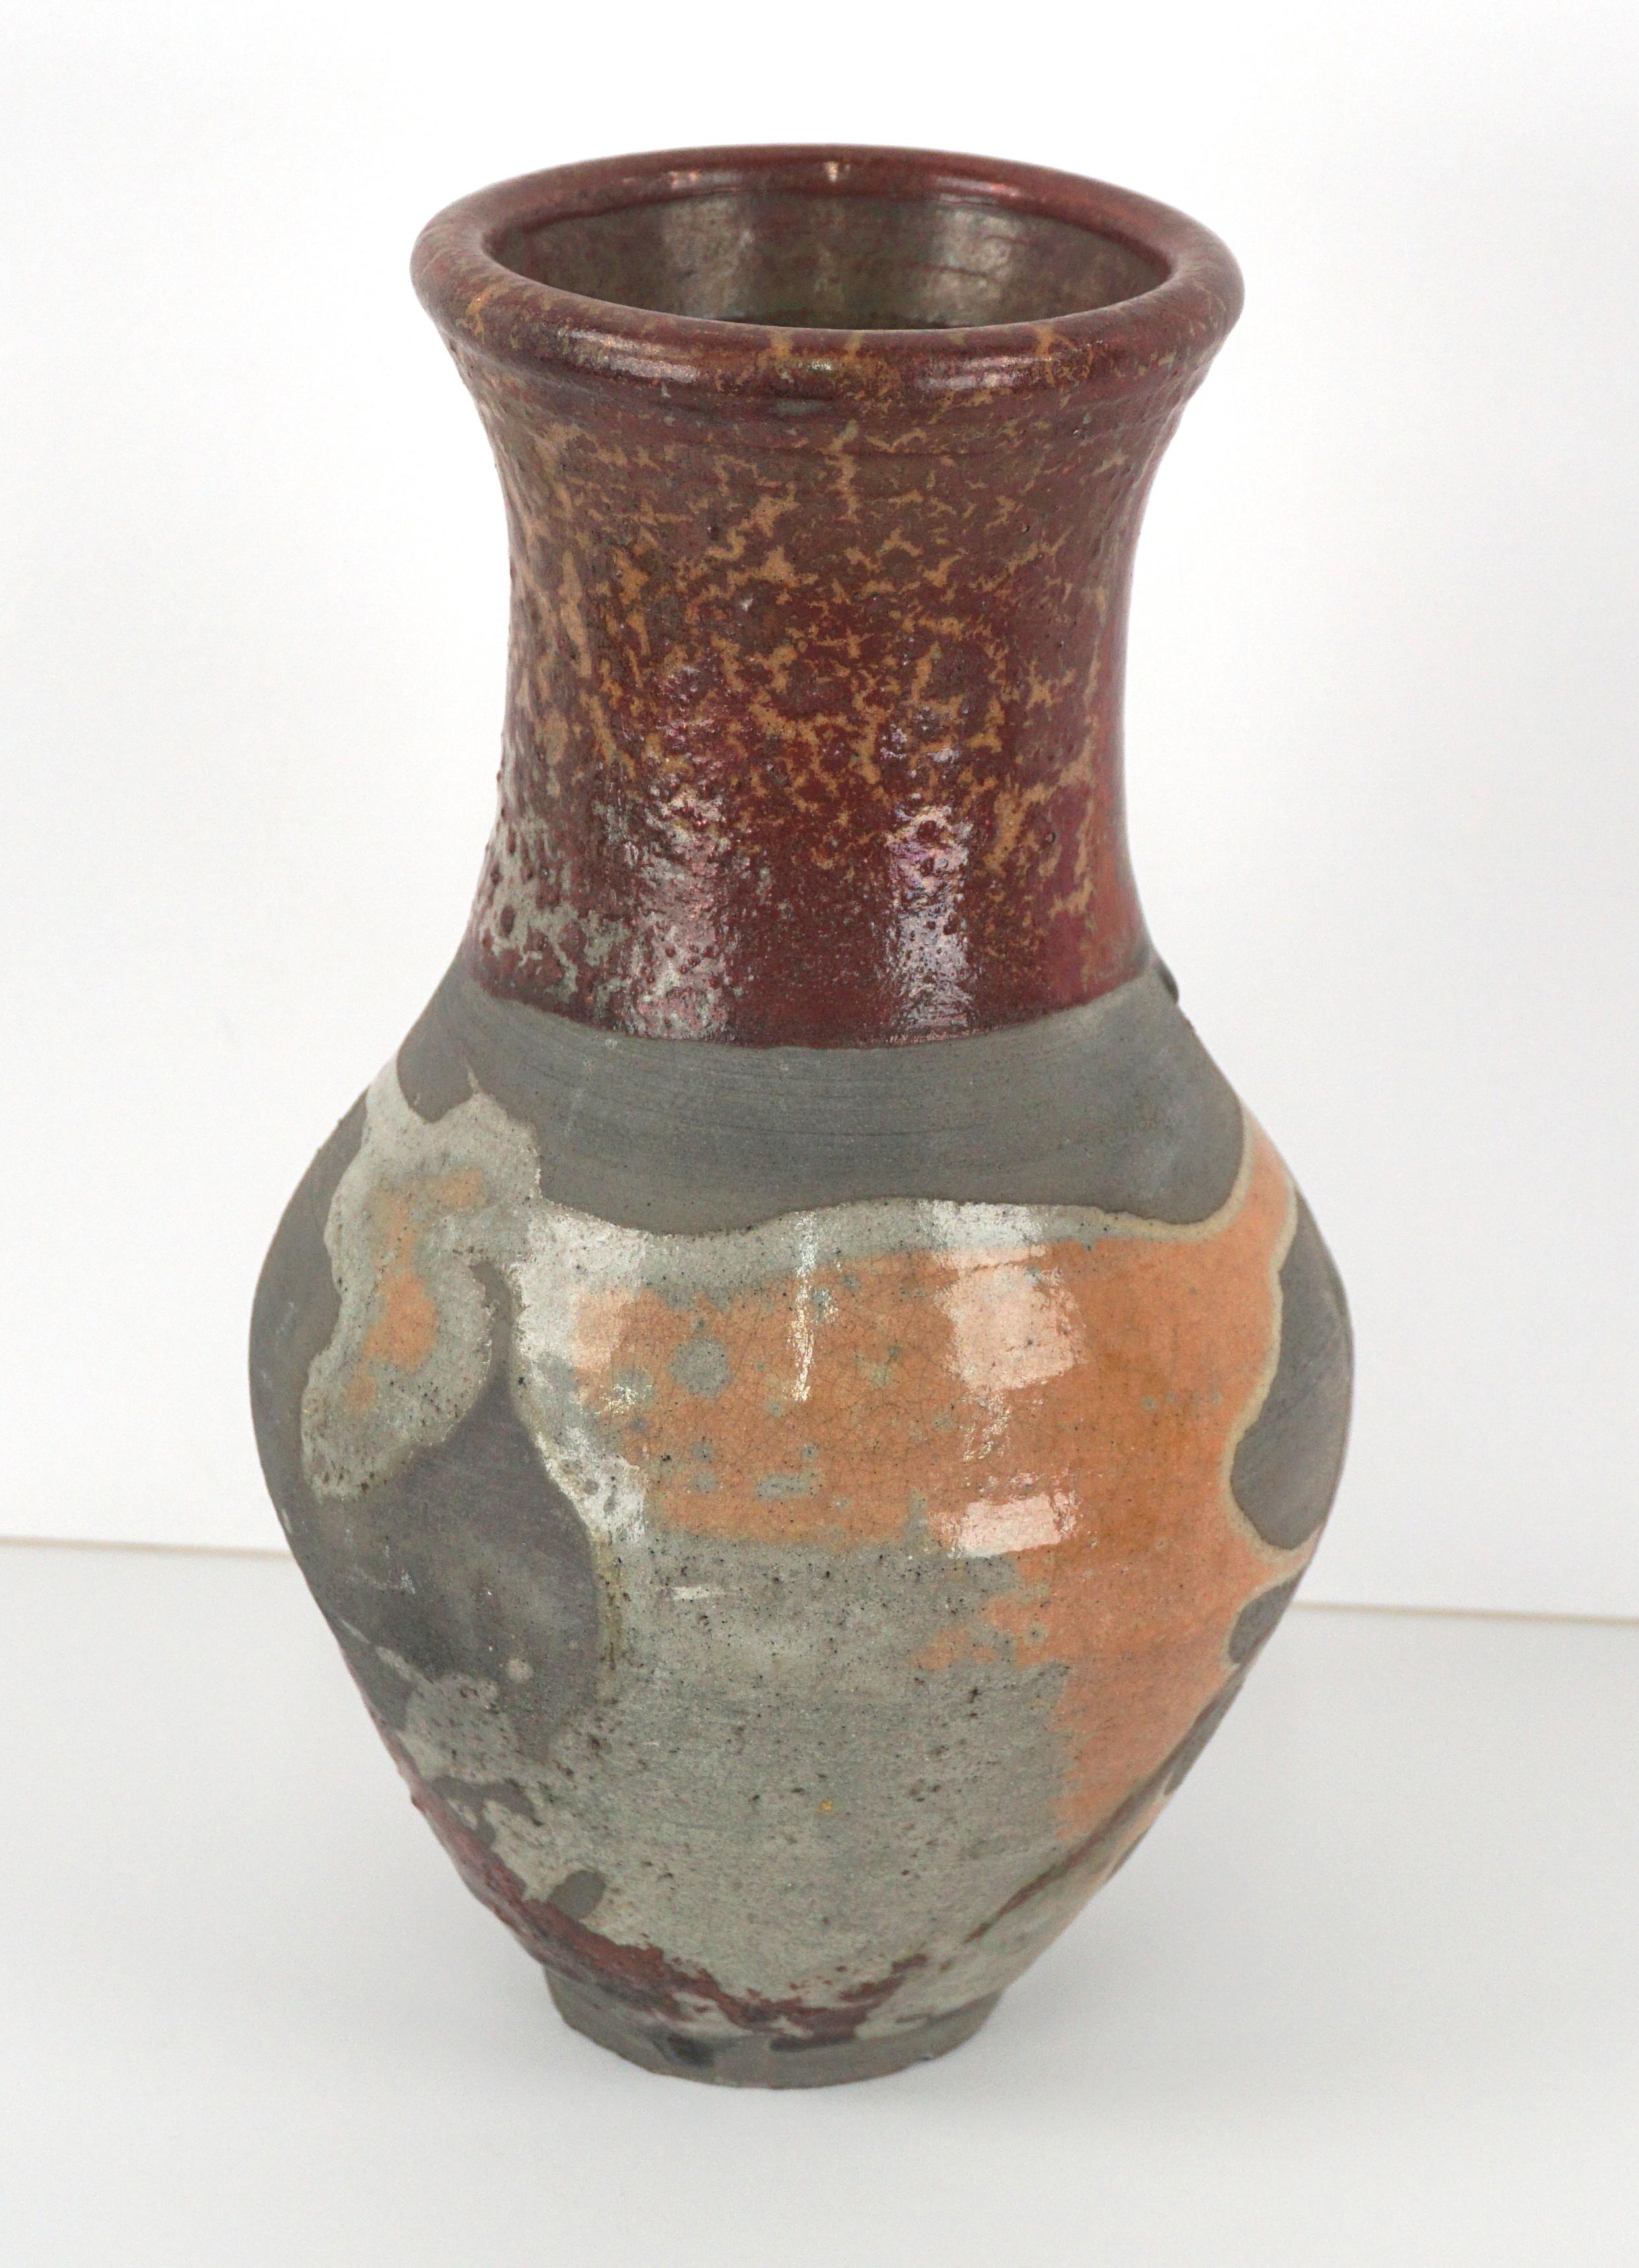 Vase dramatique en céramique de style raku de l'artiste céramiste Andy Ruble (américain, né en 1970). Le roux métallique, les gris et l'orange confèrent une esthétique organique et terreuse. Signé en bas. Taille : 9.25 